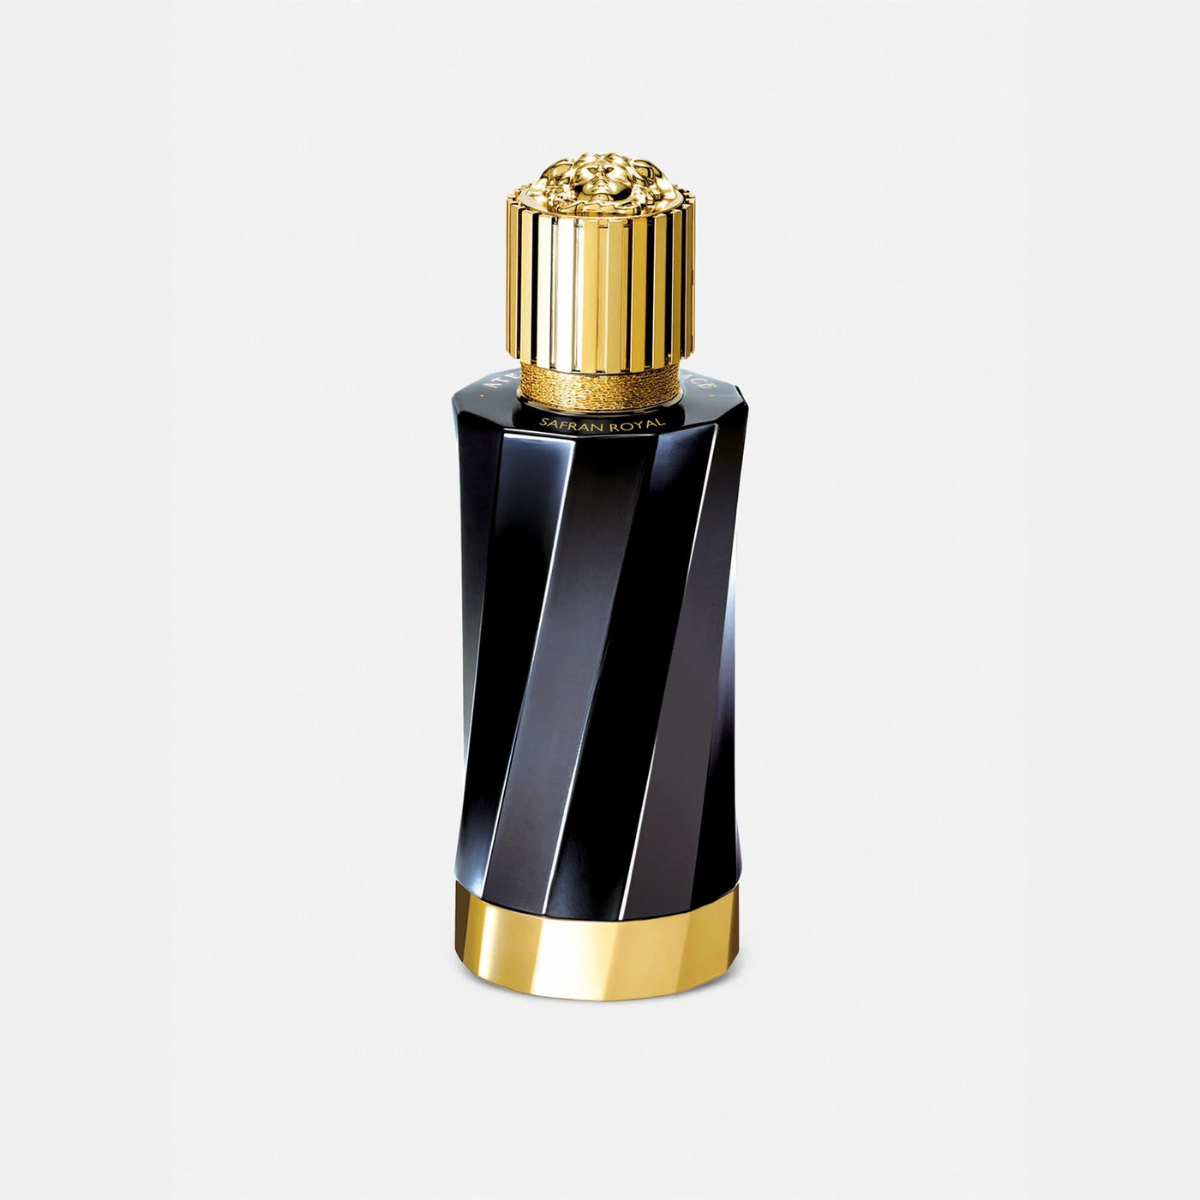 Versace Safran Royal Eau de Parfum